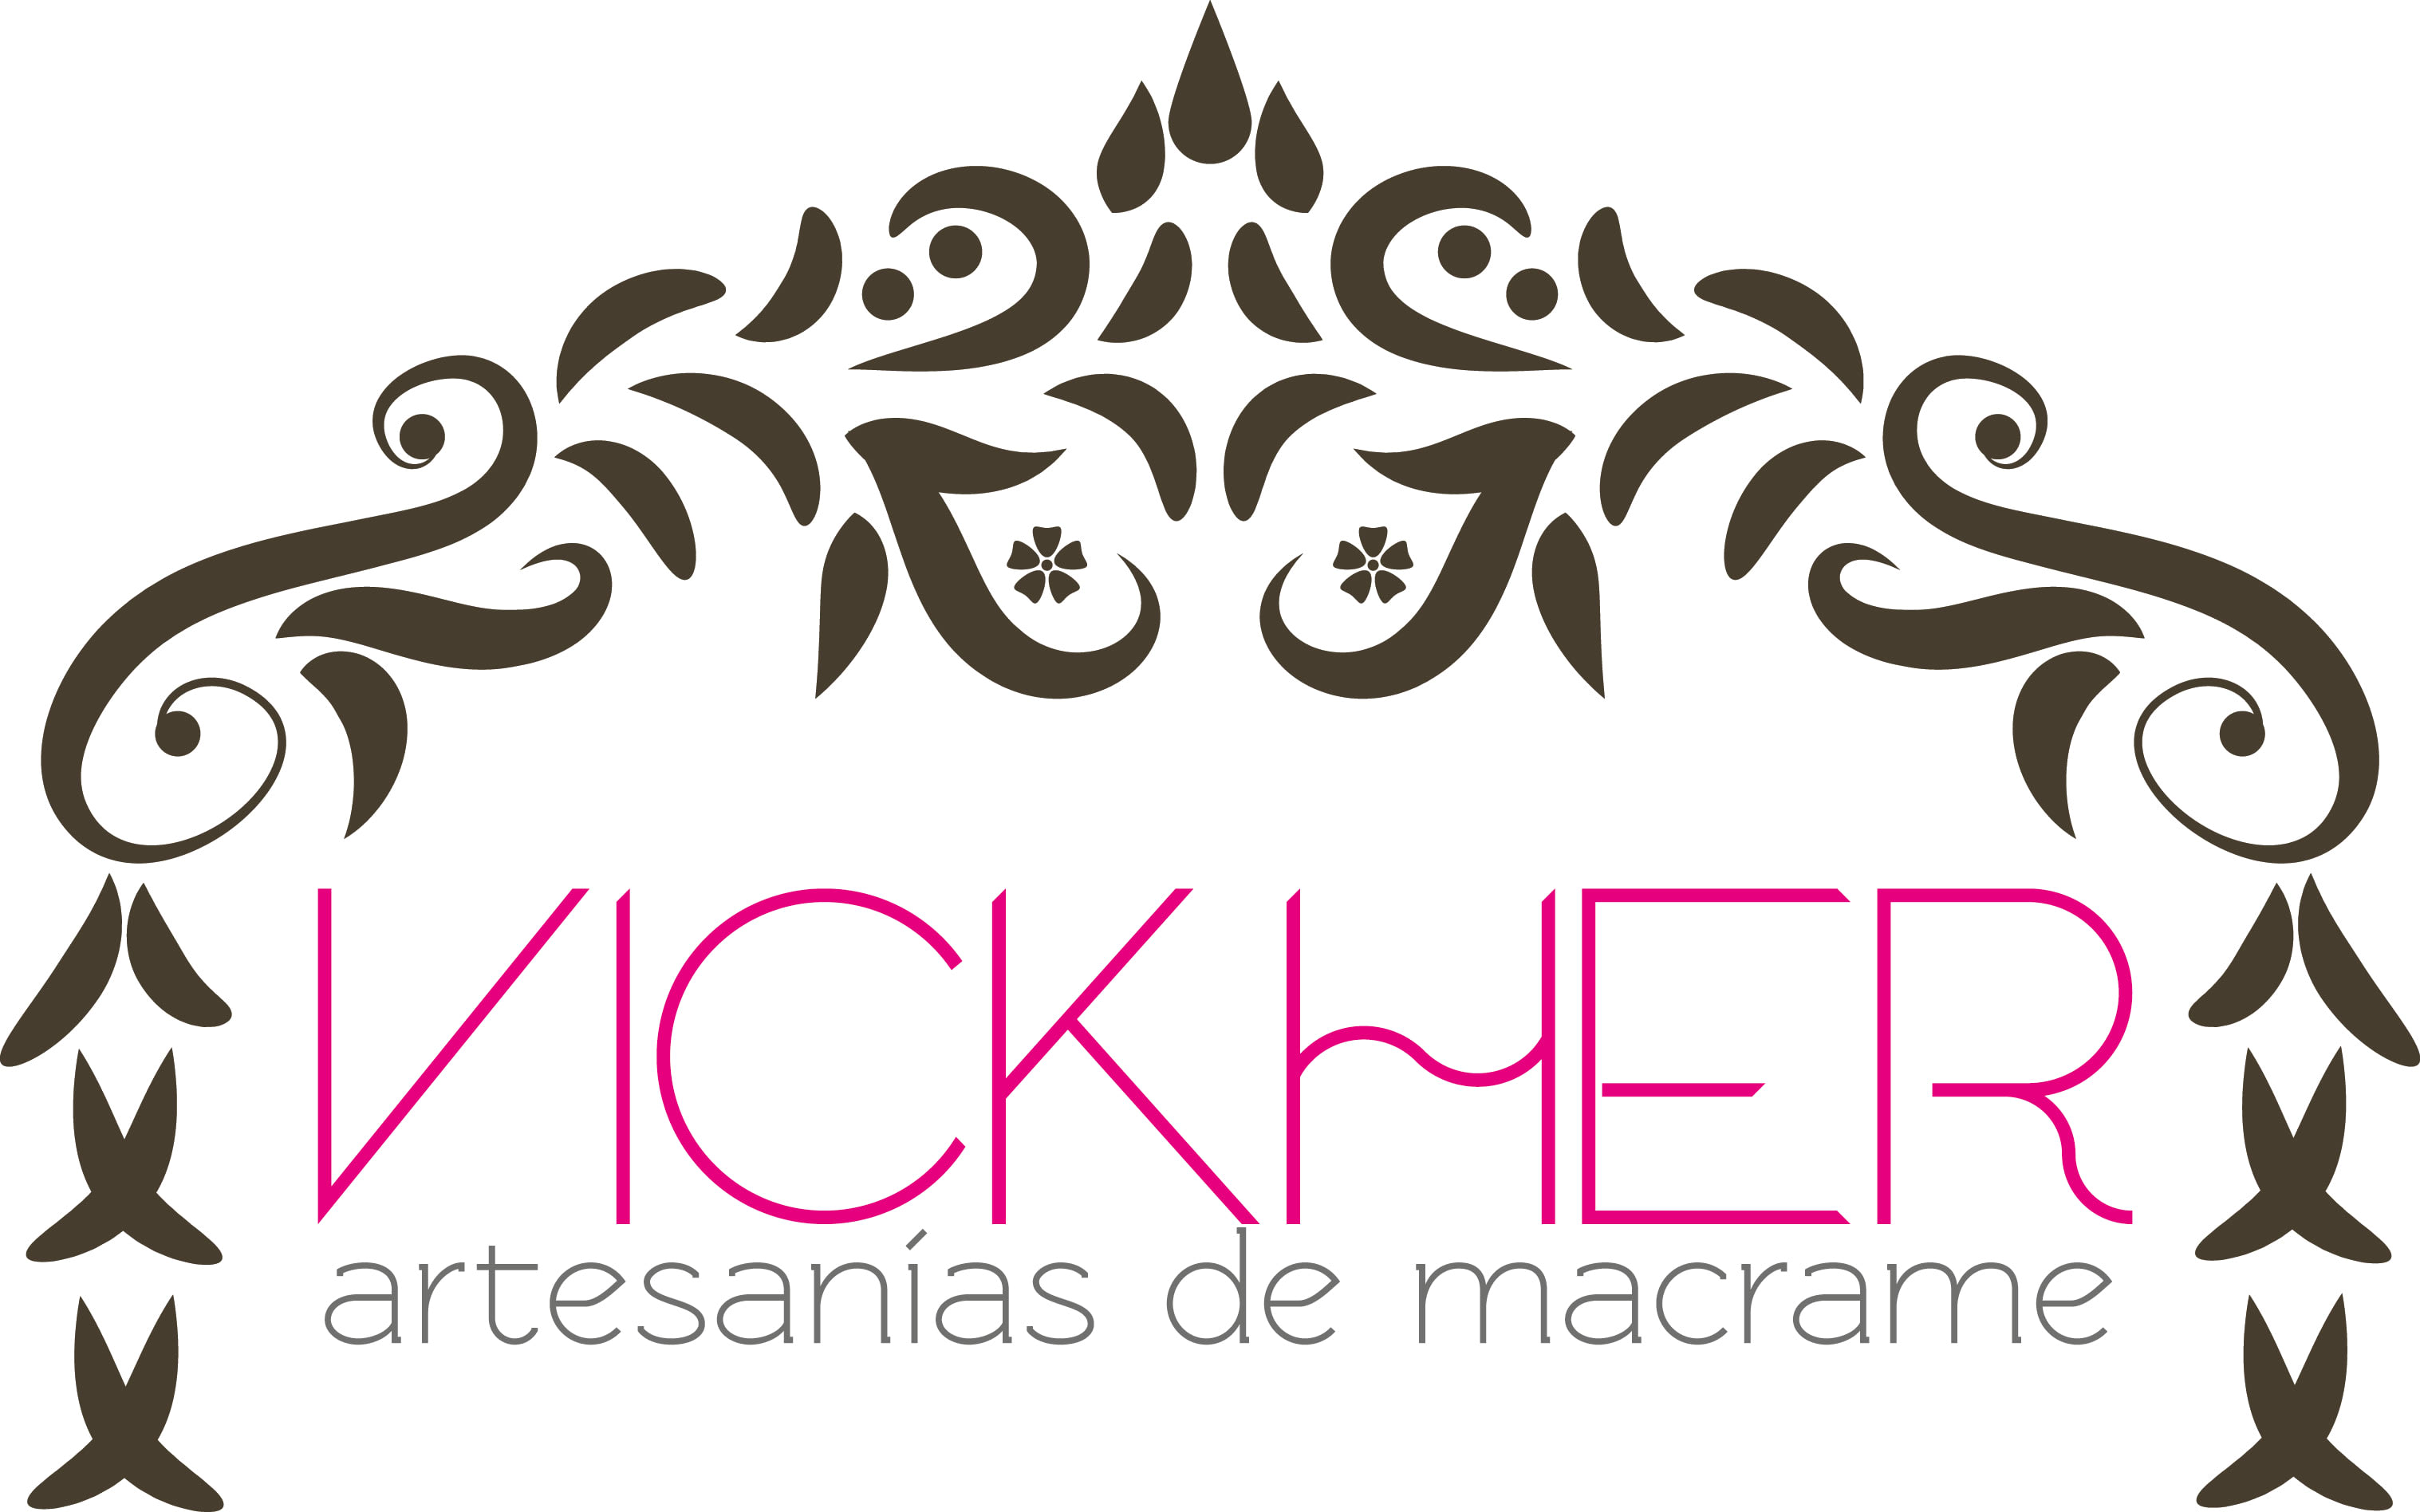 Vickher